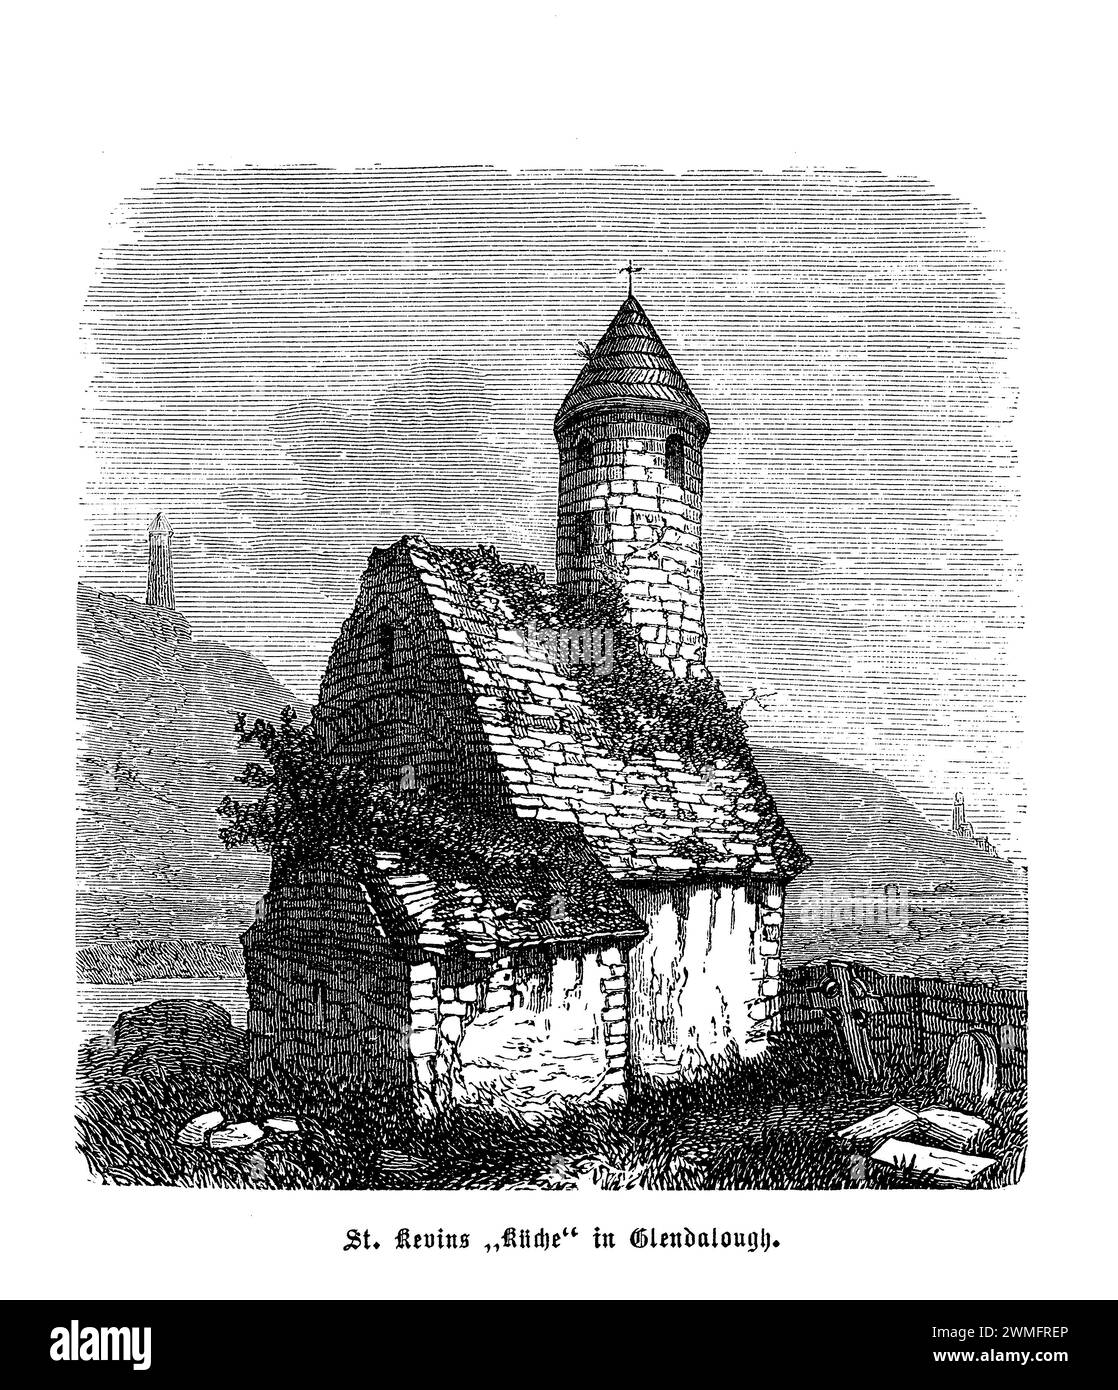 St. Kevin's Kitchen in Glendalough, Irland, ist ein bemerkenswertes Beispiel frühchristlicher Klosterarchitektur, eingebettet in die ruhige und mystische Landschaft der Wicklow Mountains. Diese antike Struktur, Teil einer Klosterstätte, die von St. Kevin wird im 6. Jahrhundert wegen seines charakteristischen runden Turms, der einem Schornstein ähnelt, oft mit einer Küche verwechselt. Der runde Turm, der in die Kirche integriert ist, ist ein wesentliches Merkmal irischer religiöser Stätten und dient sowohl als Glockenturm als auch als Zufluchtsort. Stockfoto